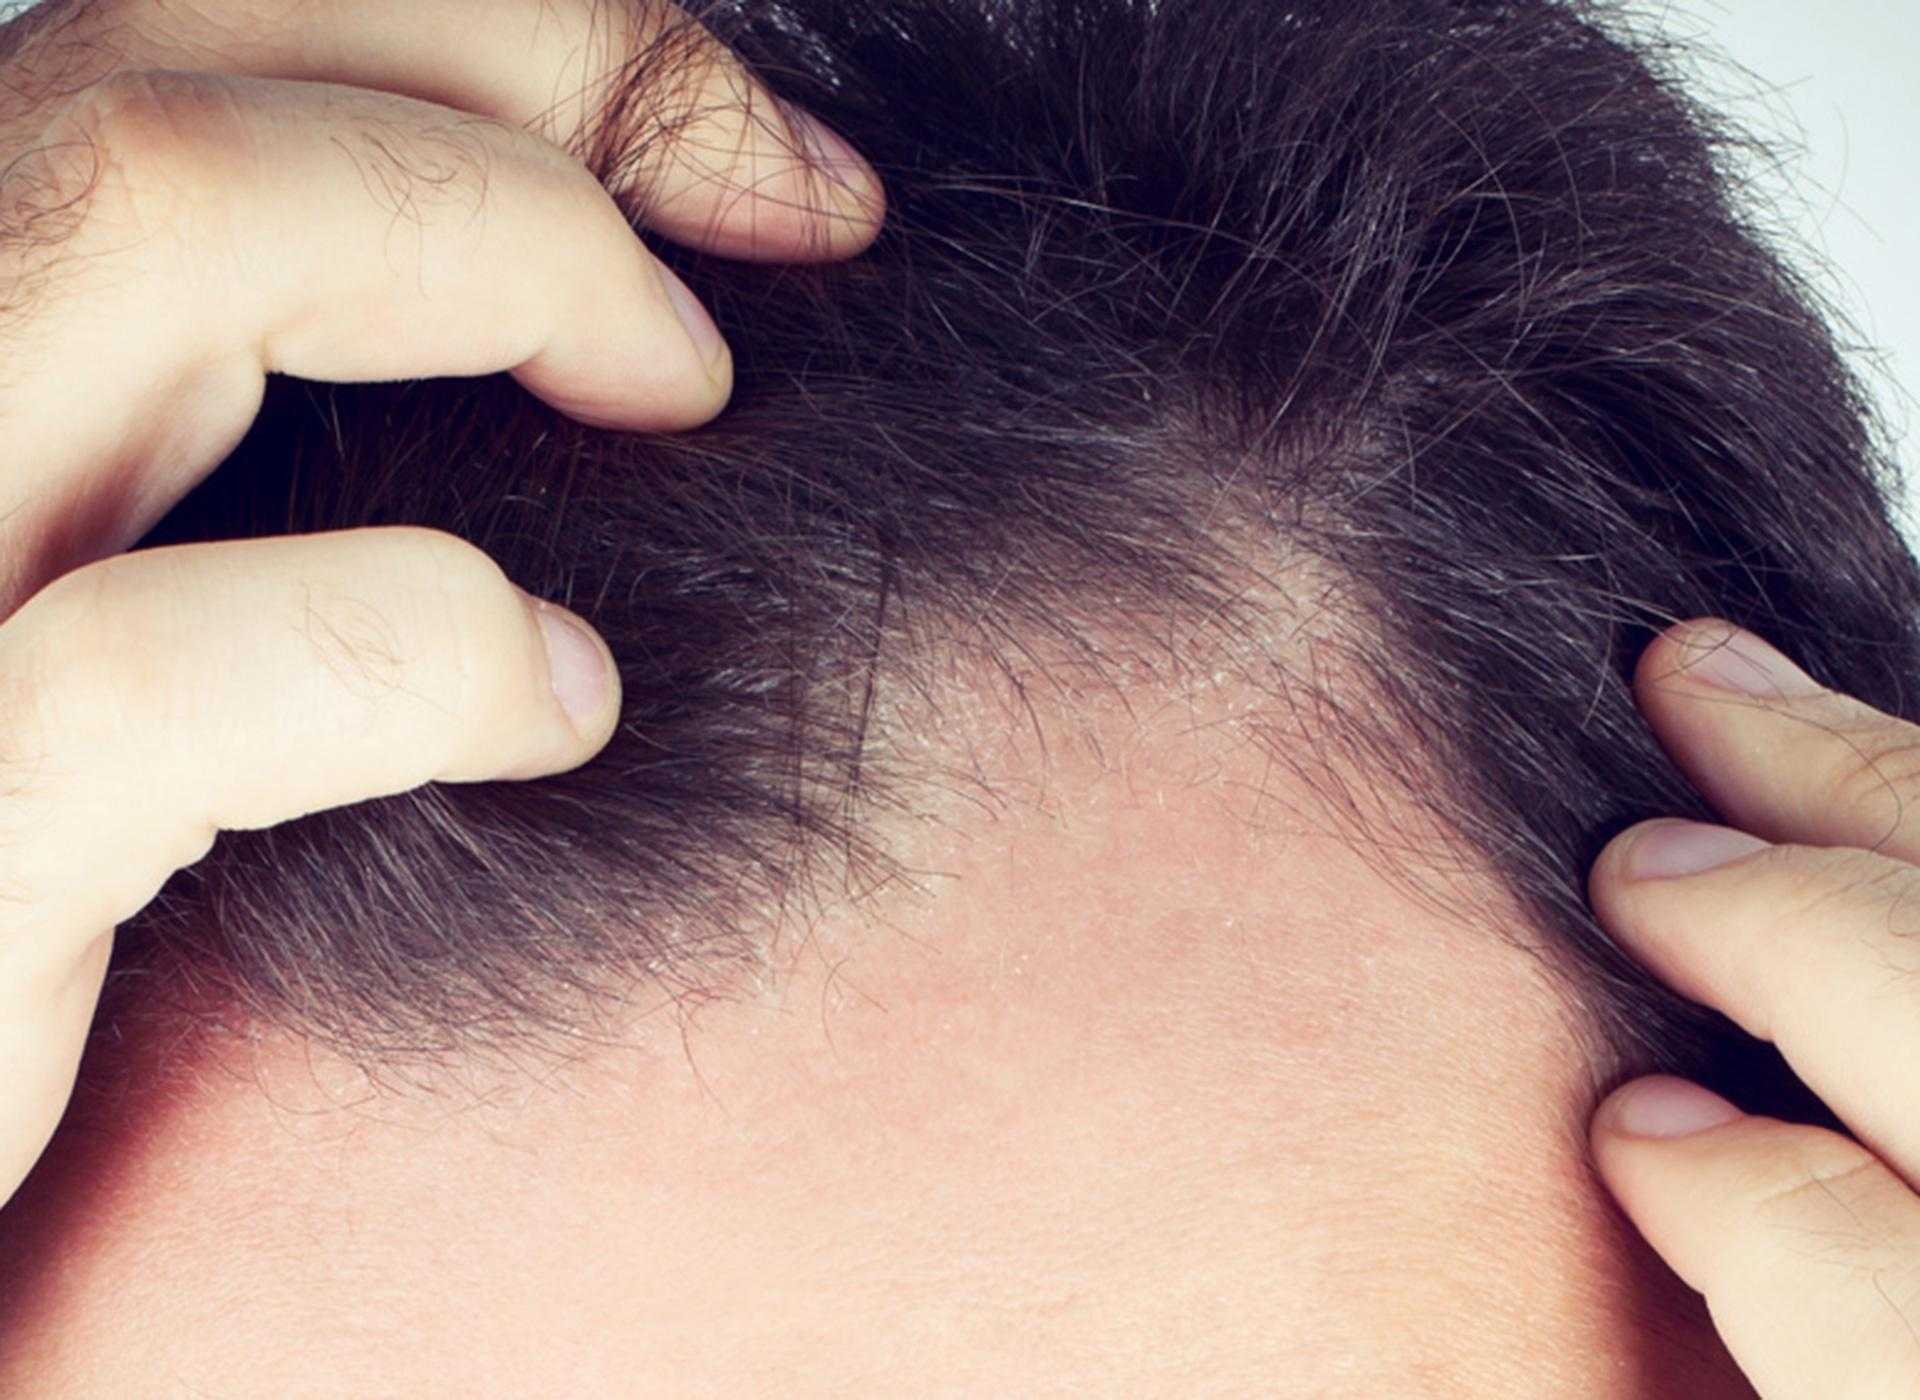 Жирная кожа головы и выпадение волос у мужчин как лечить